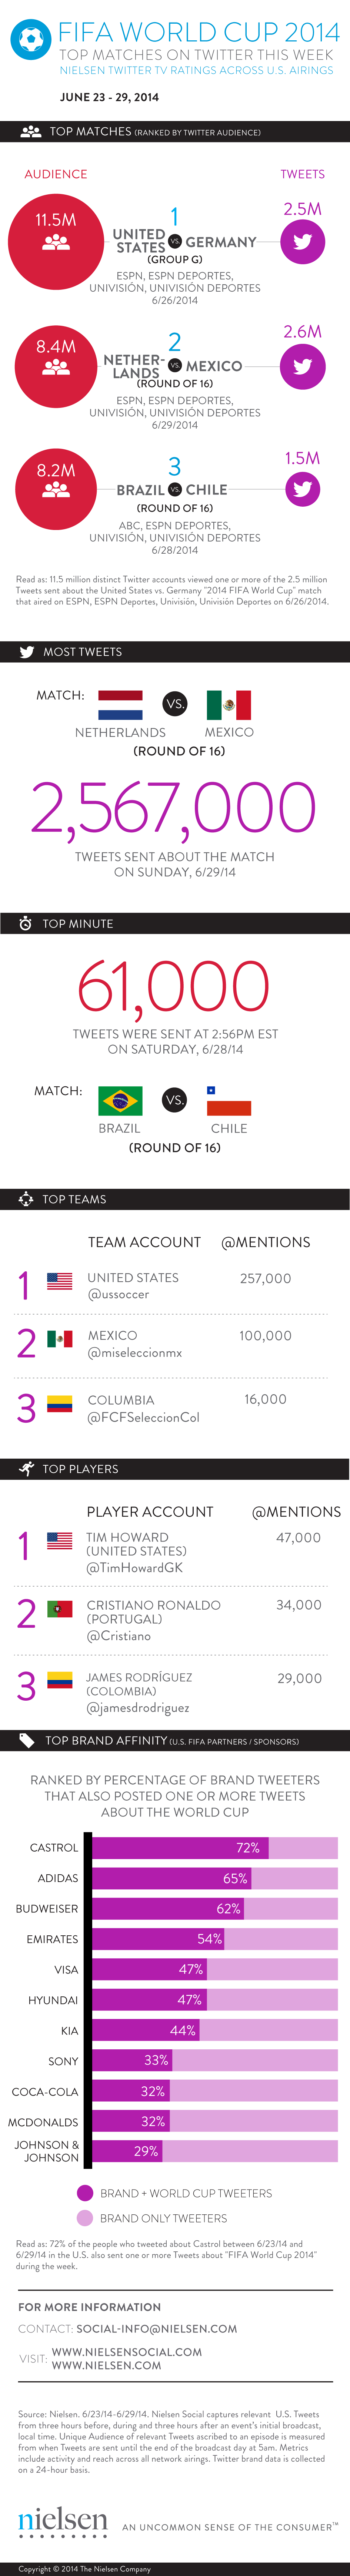 world cup 2014 social scorecard mobile